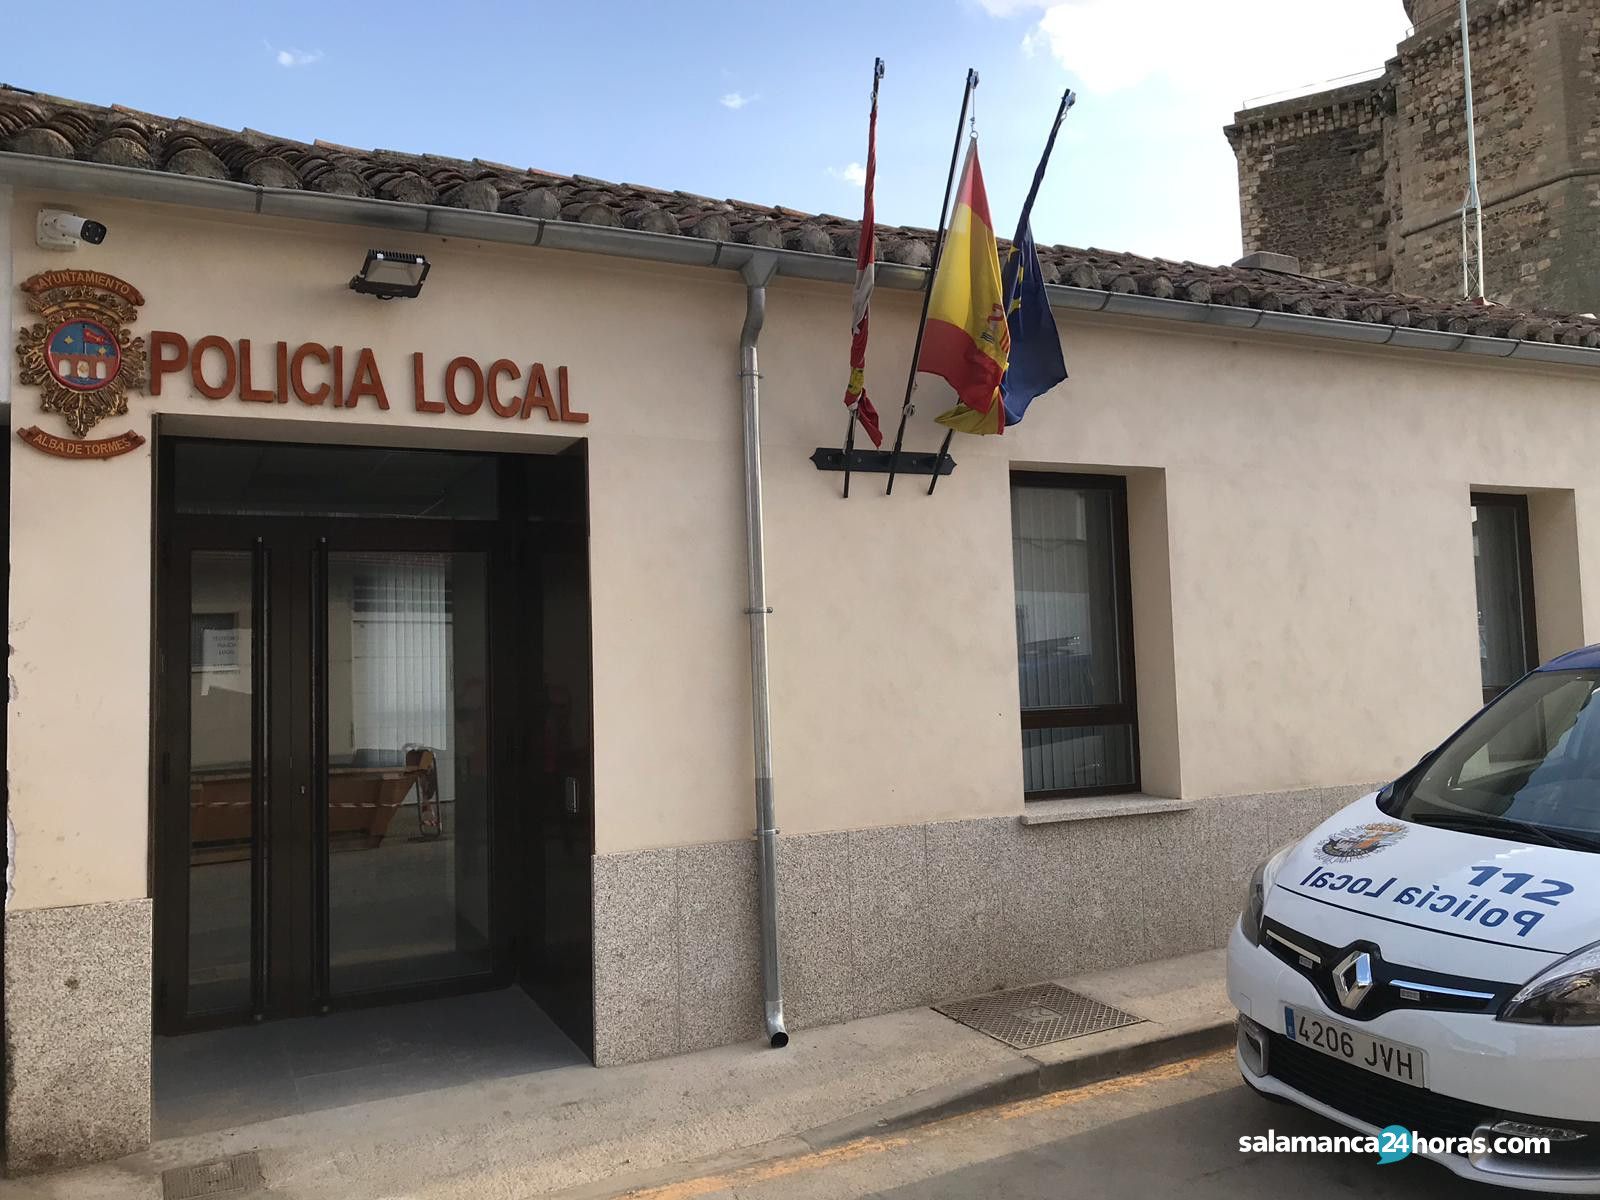  Policía Local de Salamanca en Alba de Tormes (3) 